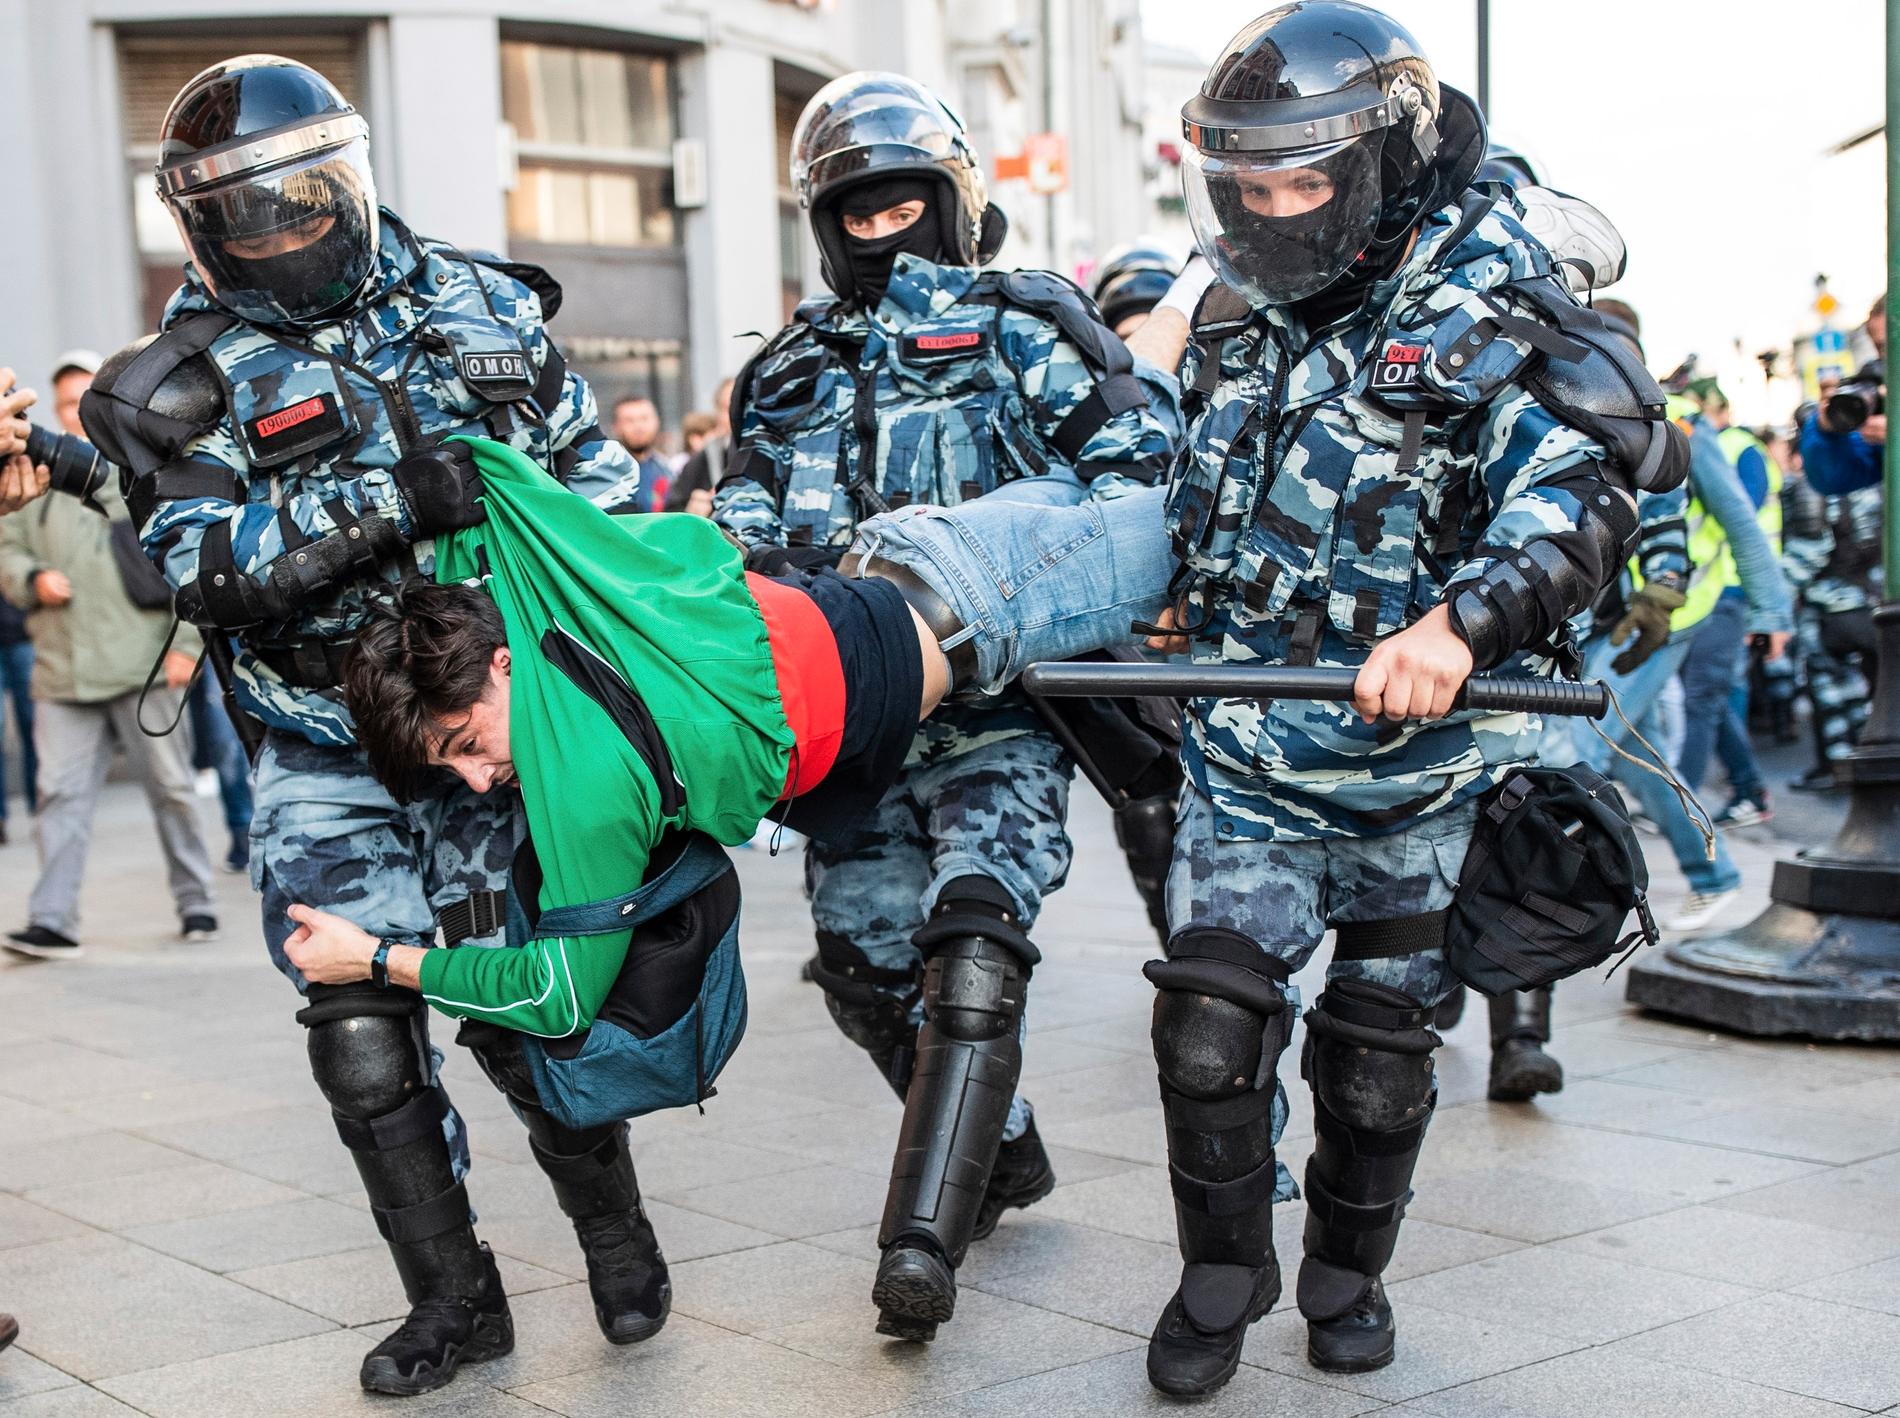 Moskva-polisens hårdhänta metoder mot fredliga demonstranter har kritiserats internationellt.